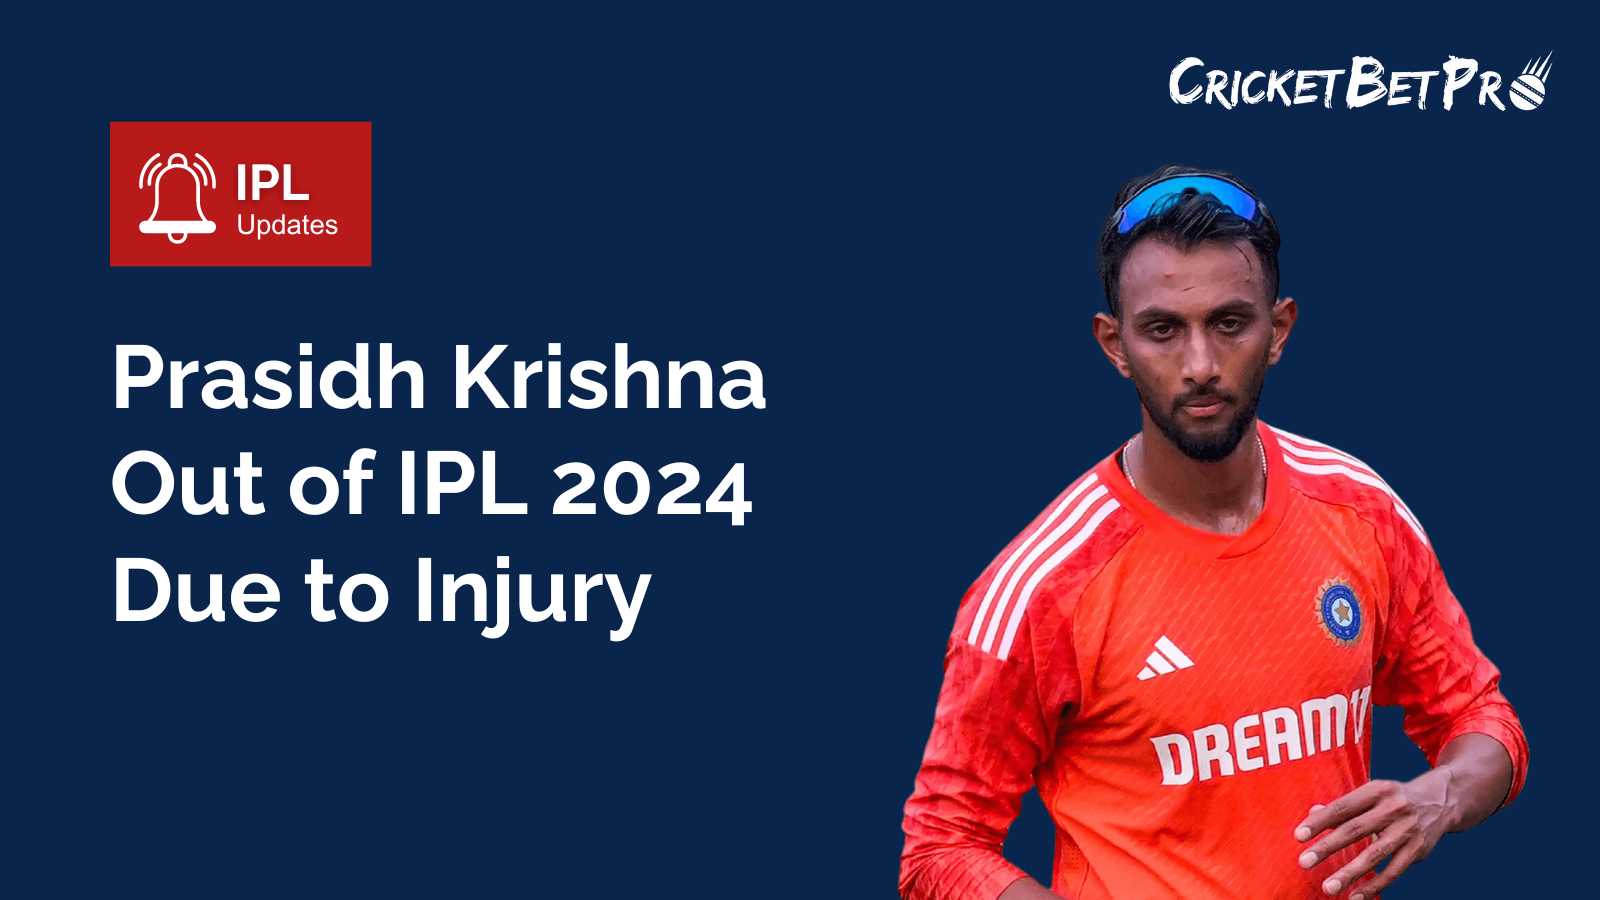 Prasidh Krishna Out of IPL 2024 Due to Injury